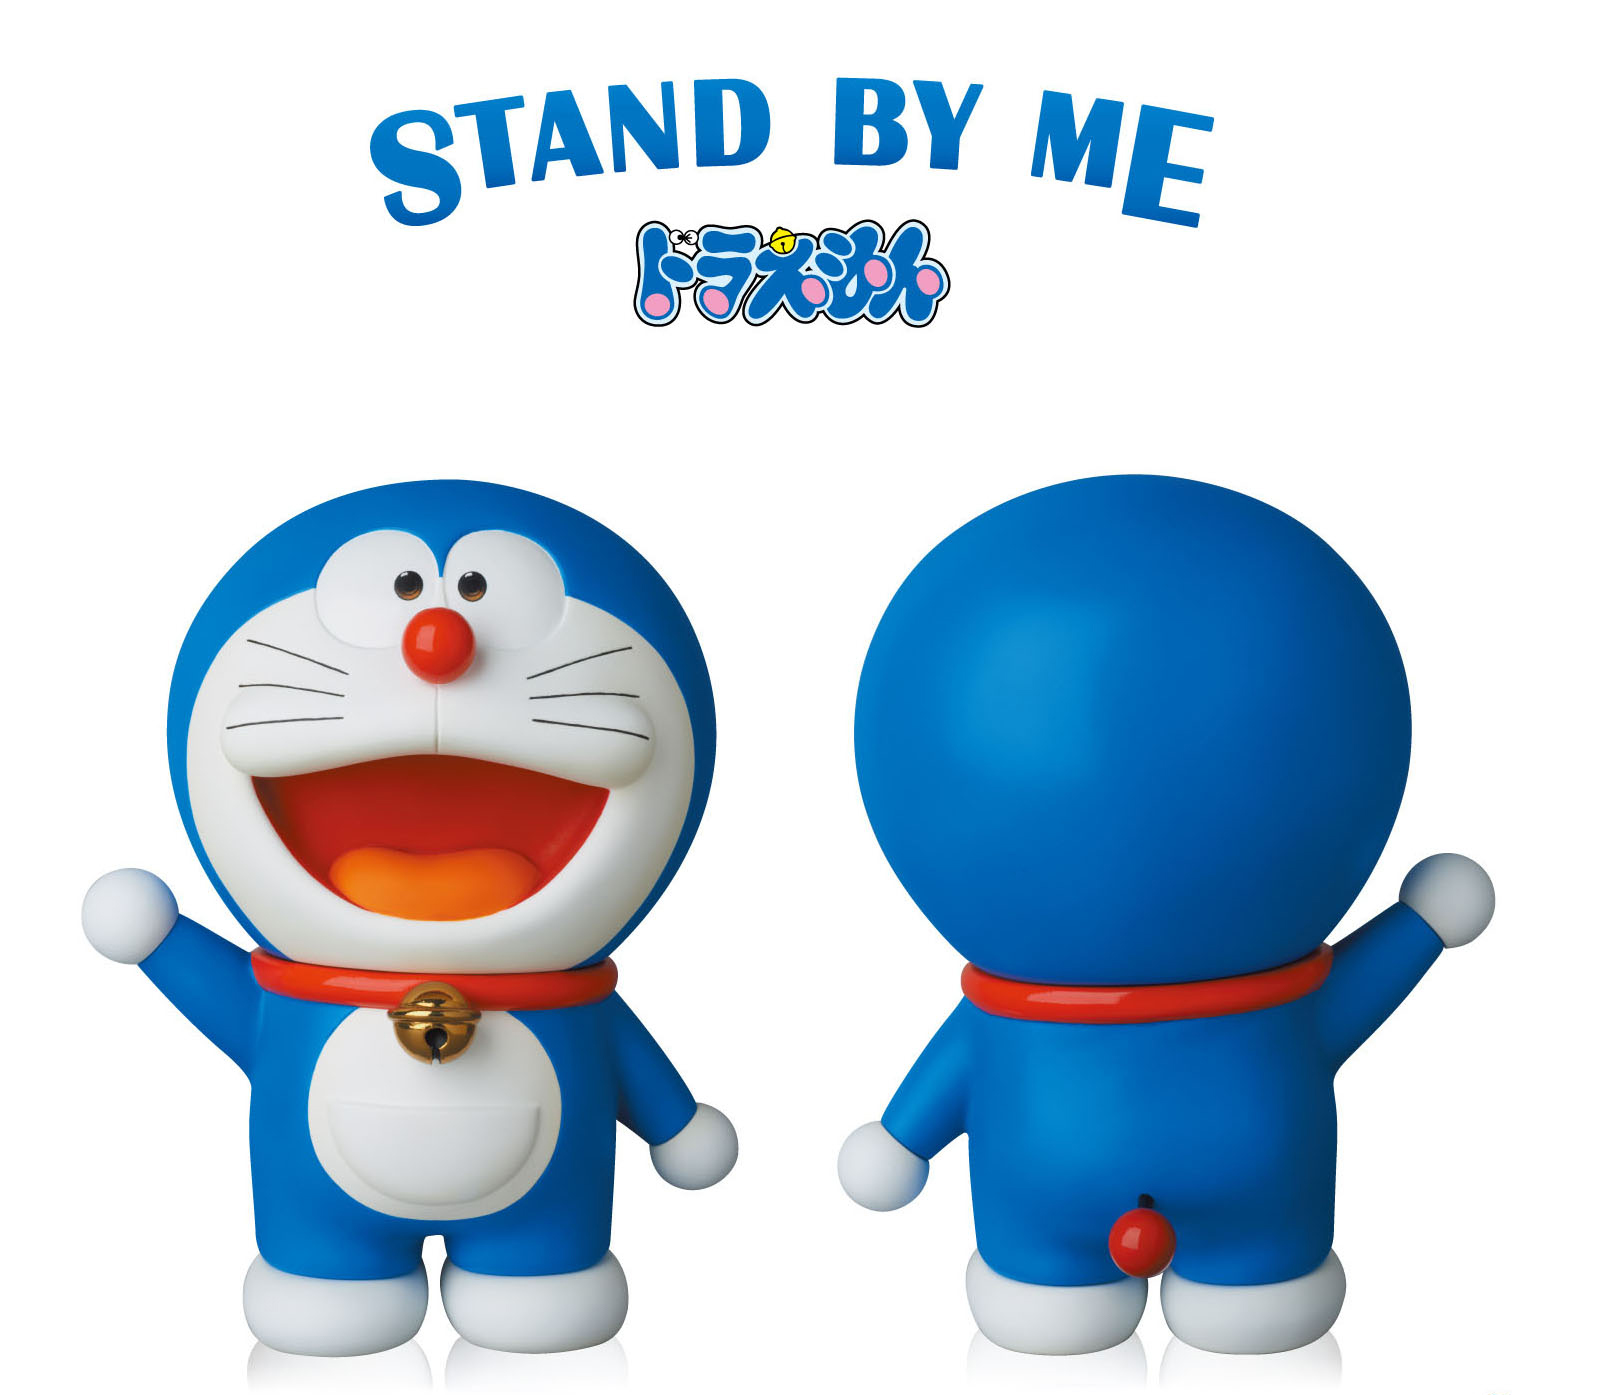 【试片】《stand by me 哆啦a梦》哆啦a梦 3d cg 化 经典桥段集结其中